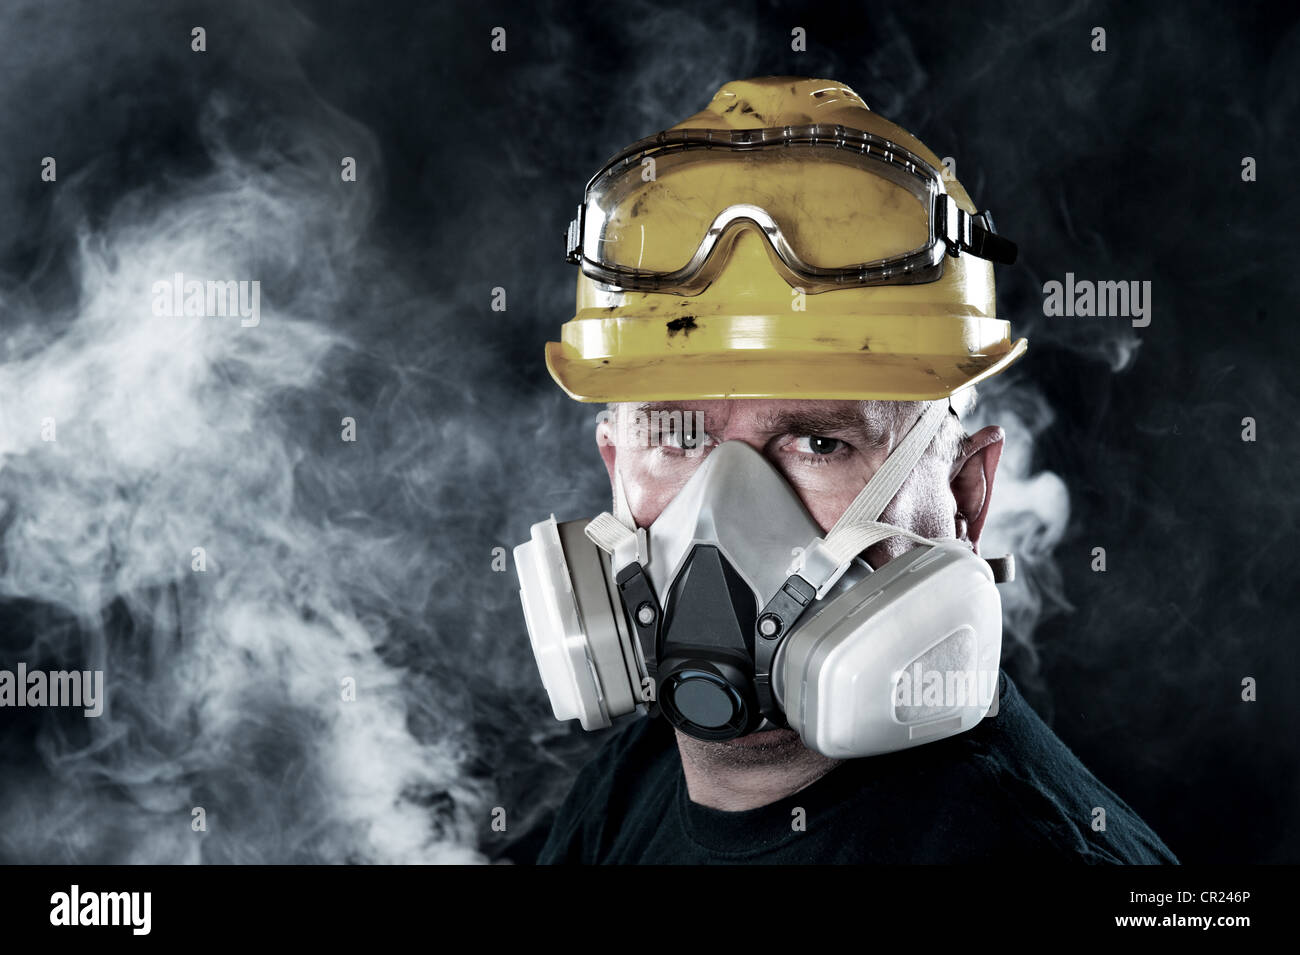 Un sauveteur porte un masque respiratoire dans une atmosphère toxique, smokey. Image montre l'importance de la protection et de la sécurité de l'état de préparation. Banque D'Images